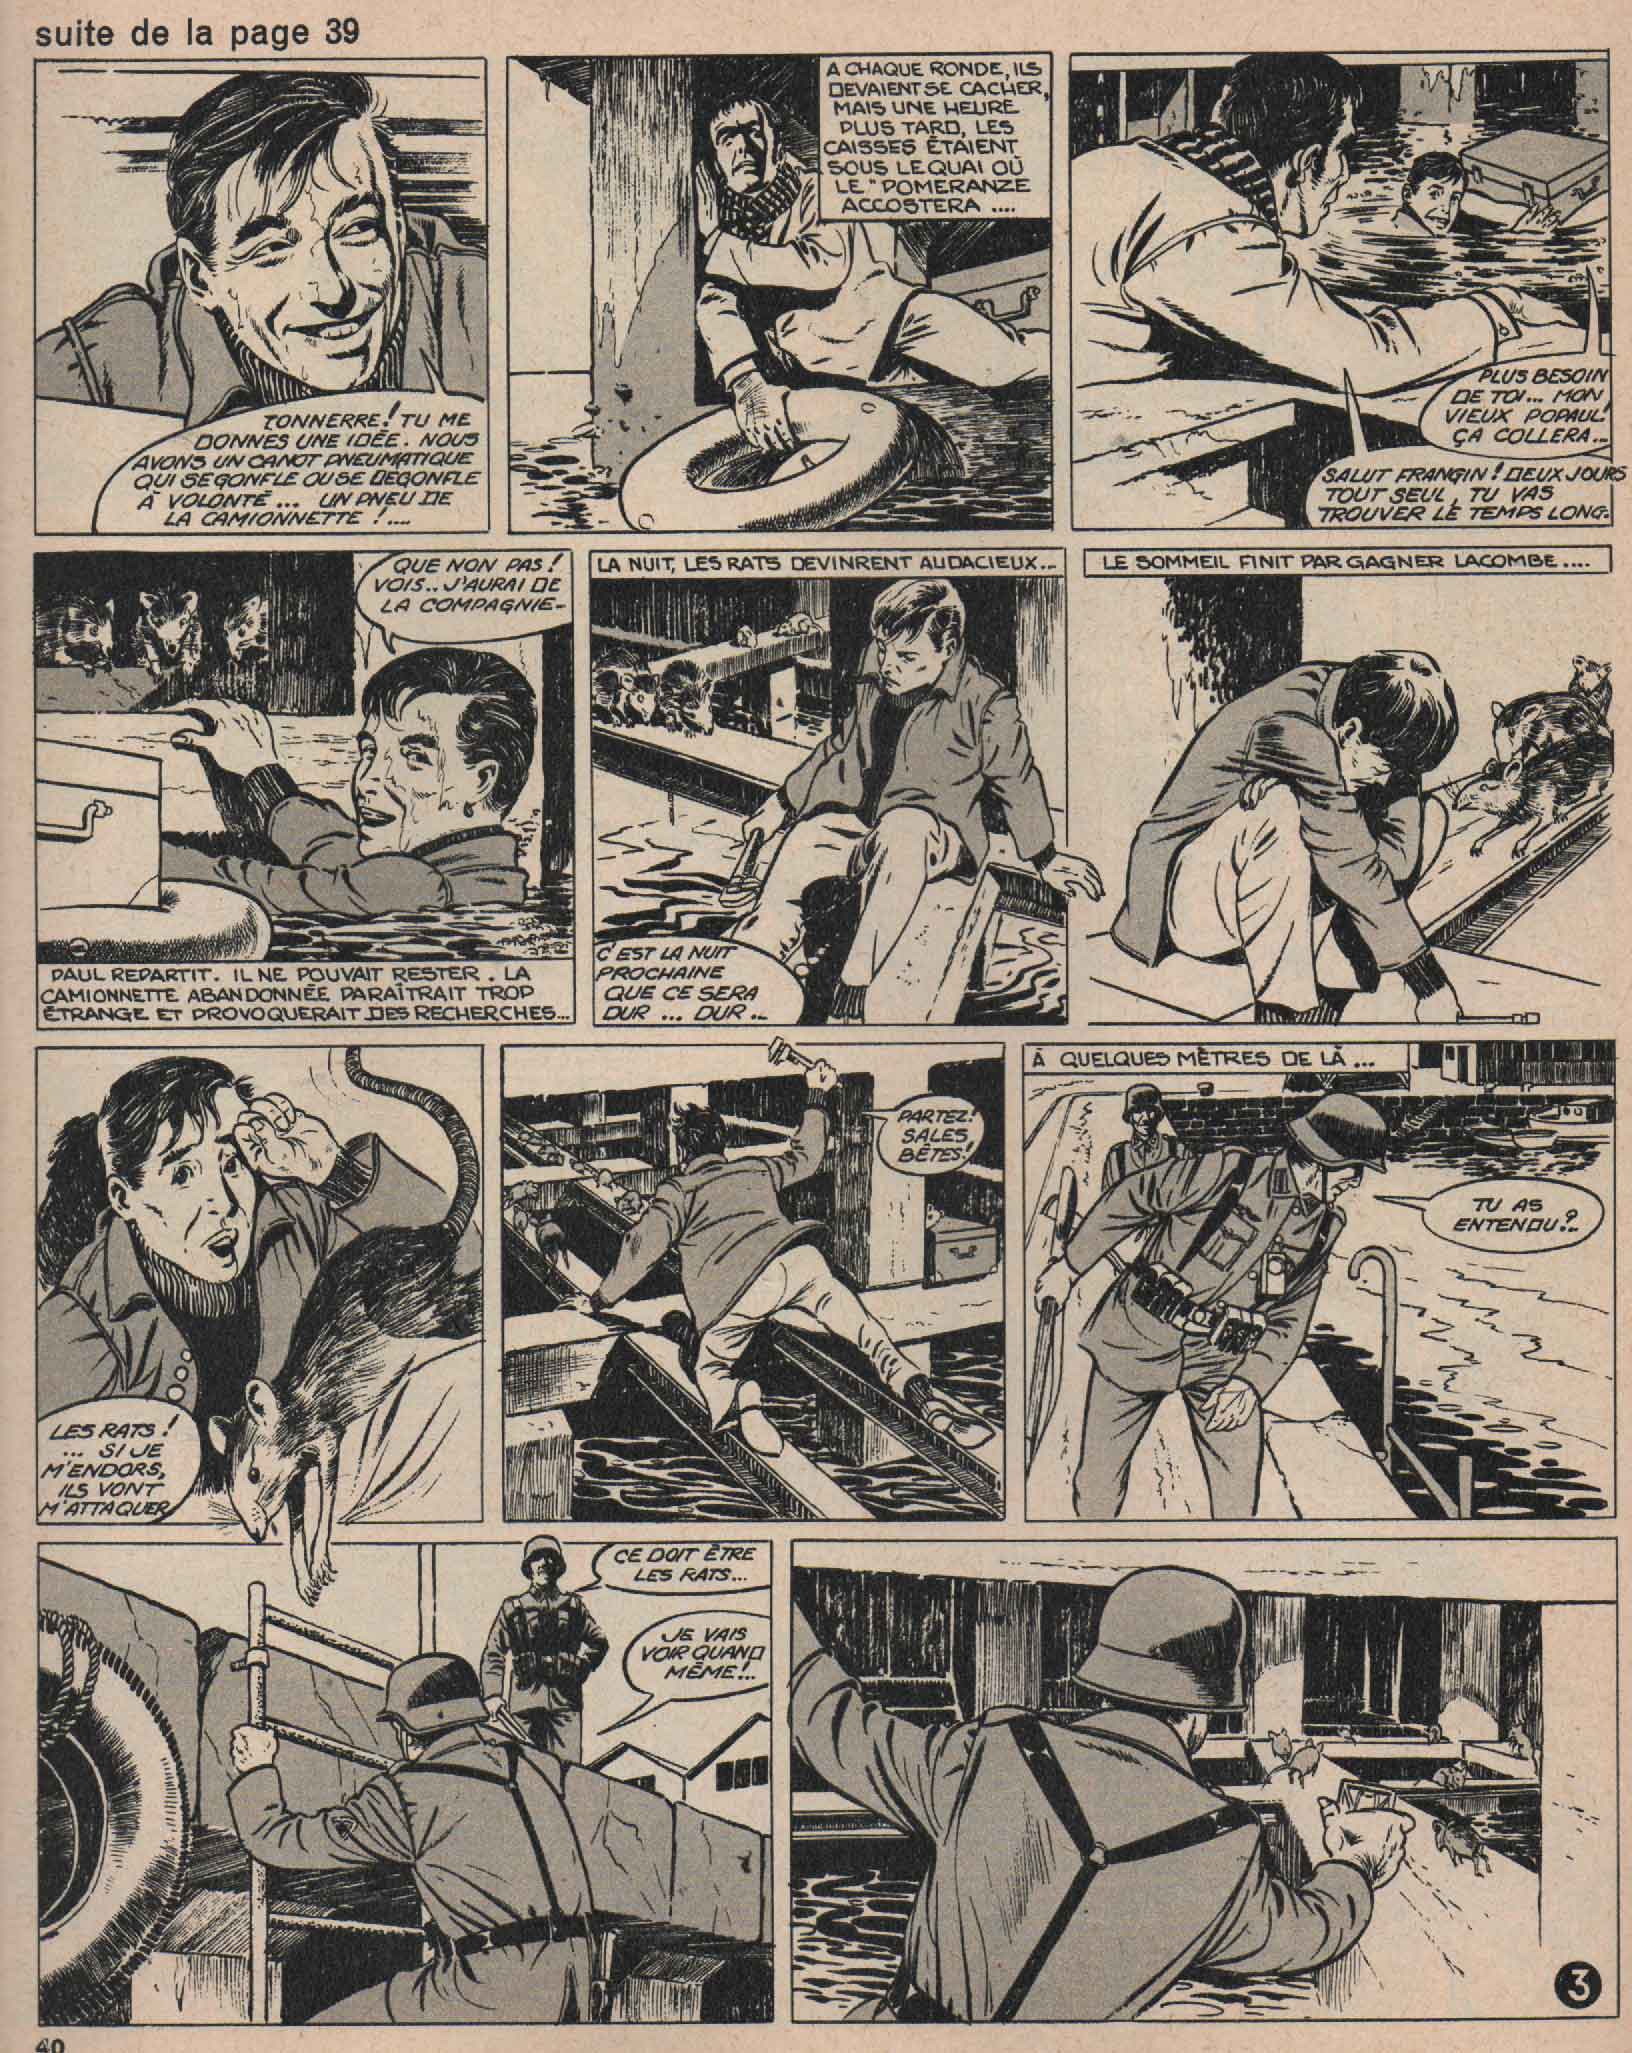 « Le Pomeranze a franchi le passé » Vaillant n° 1023 (20/12/1964).